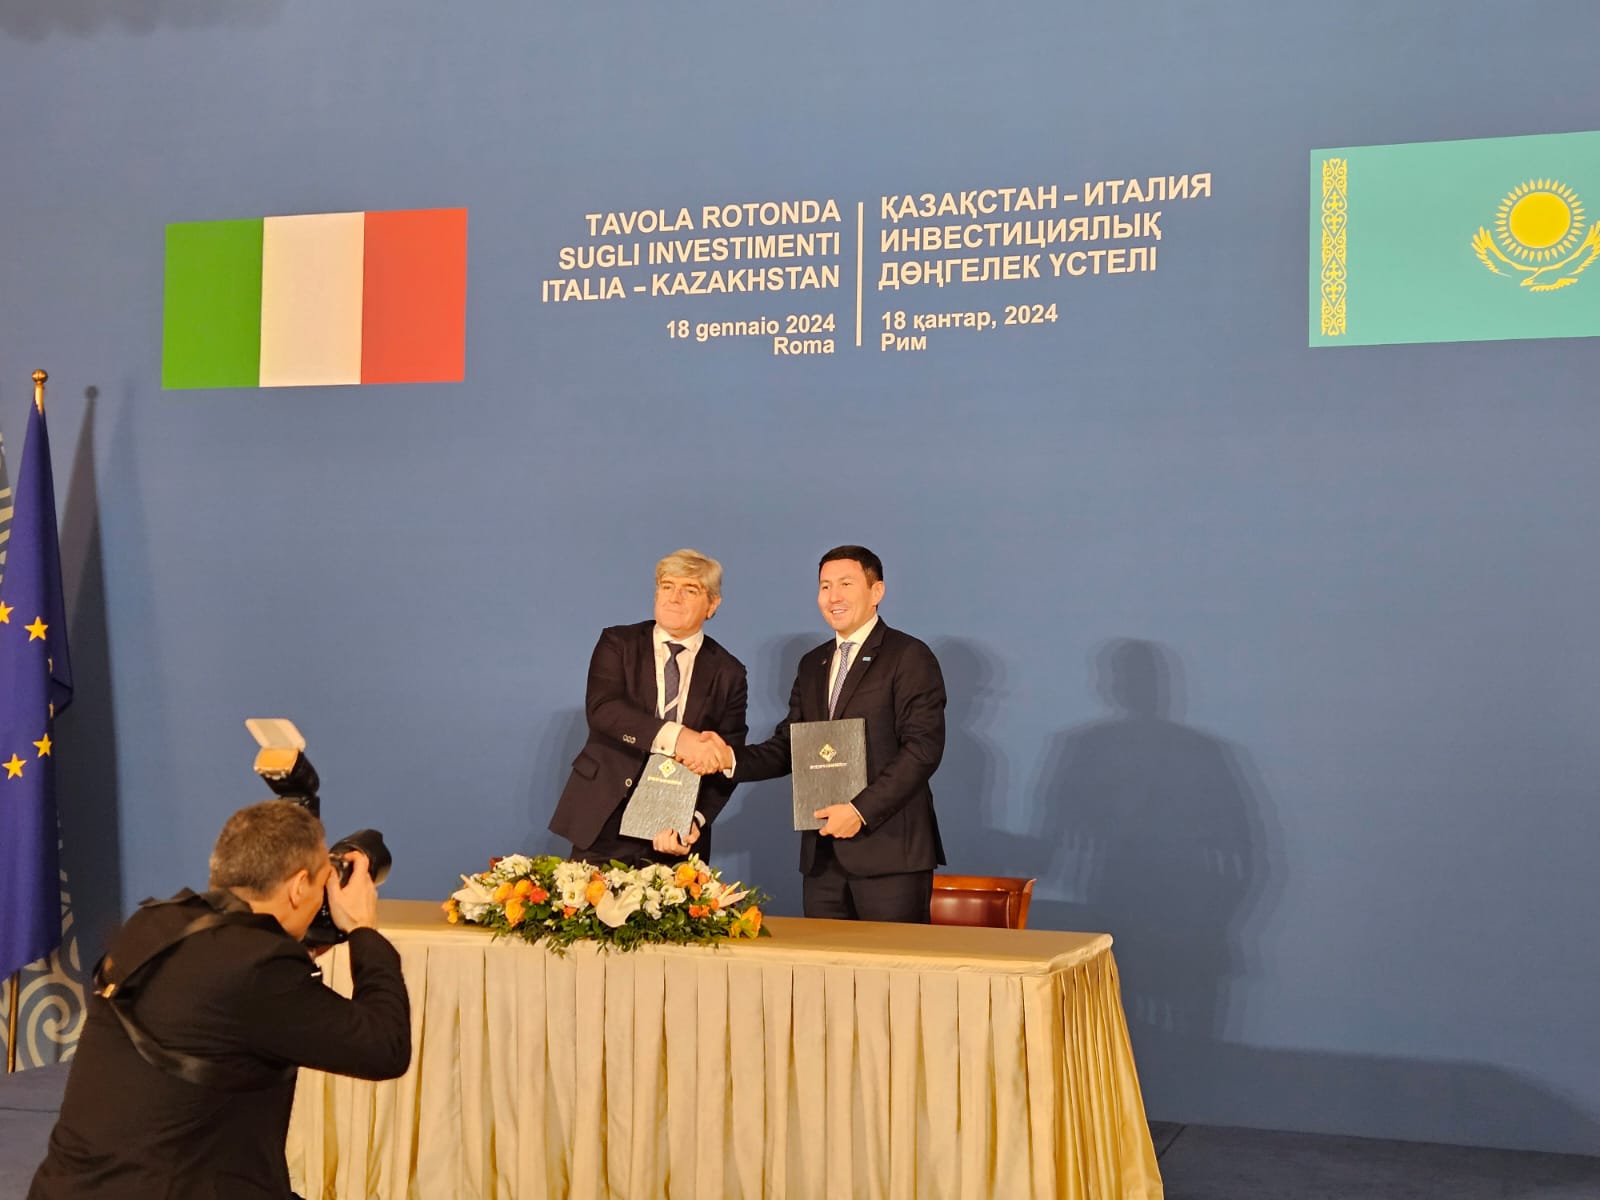 MAIRE e Kazakistan: collaborazione su iniziative di transizione energetica